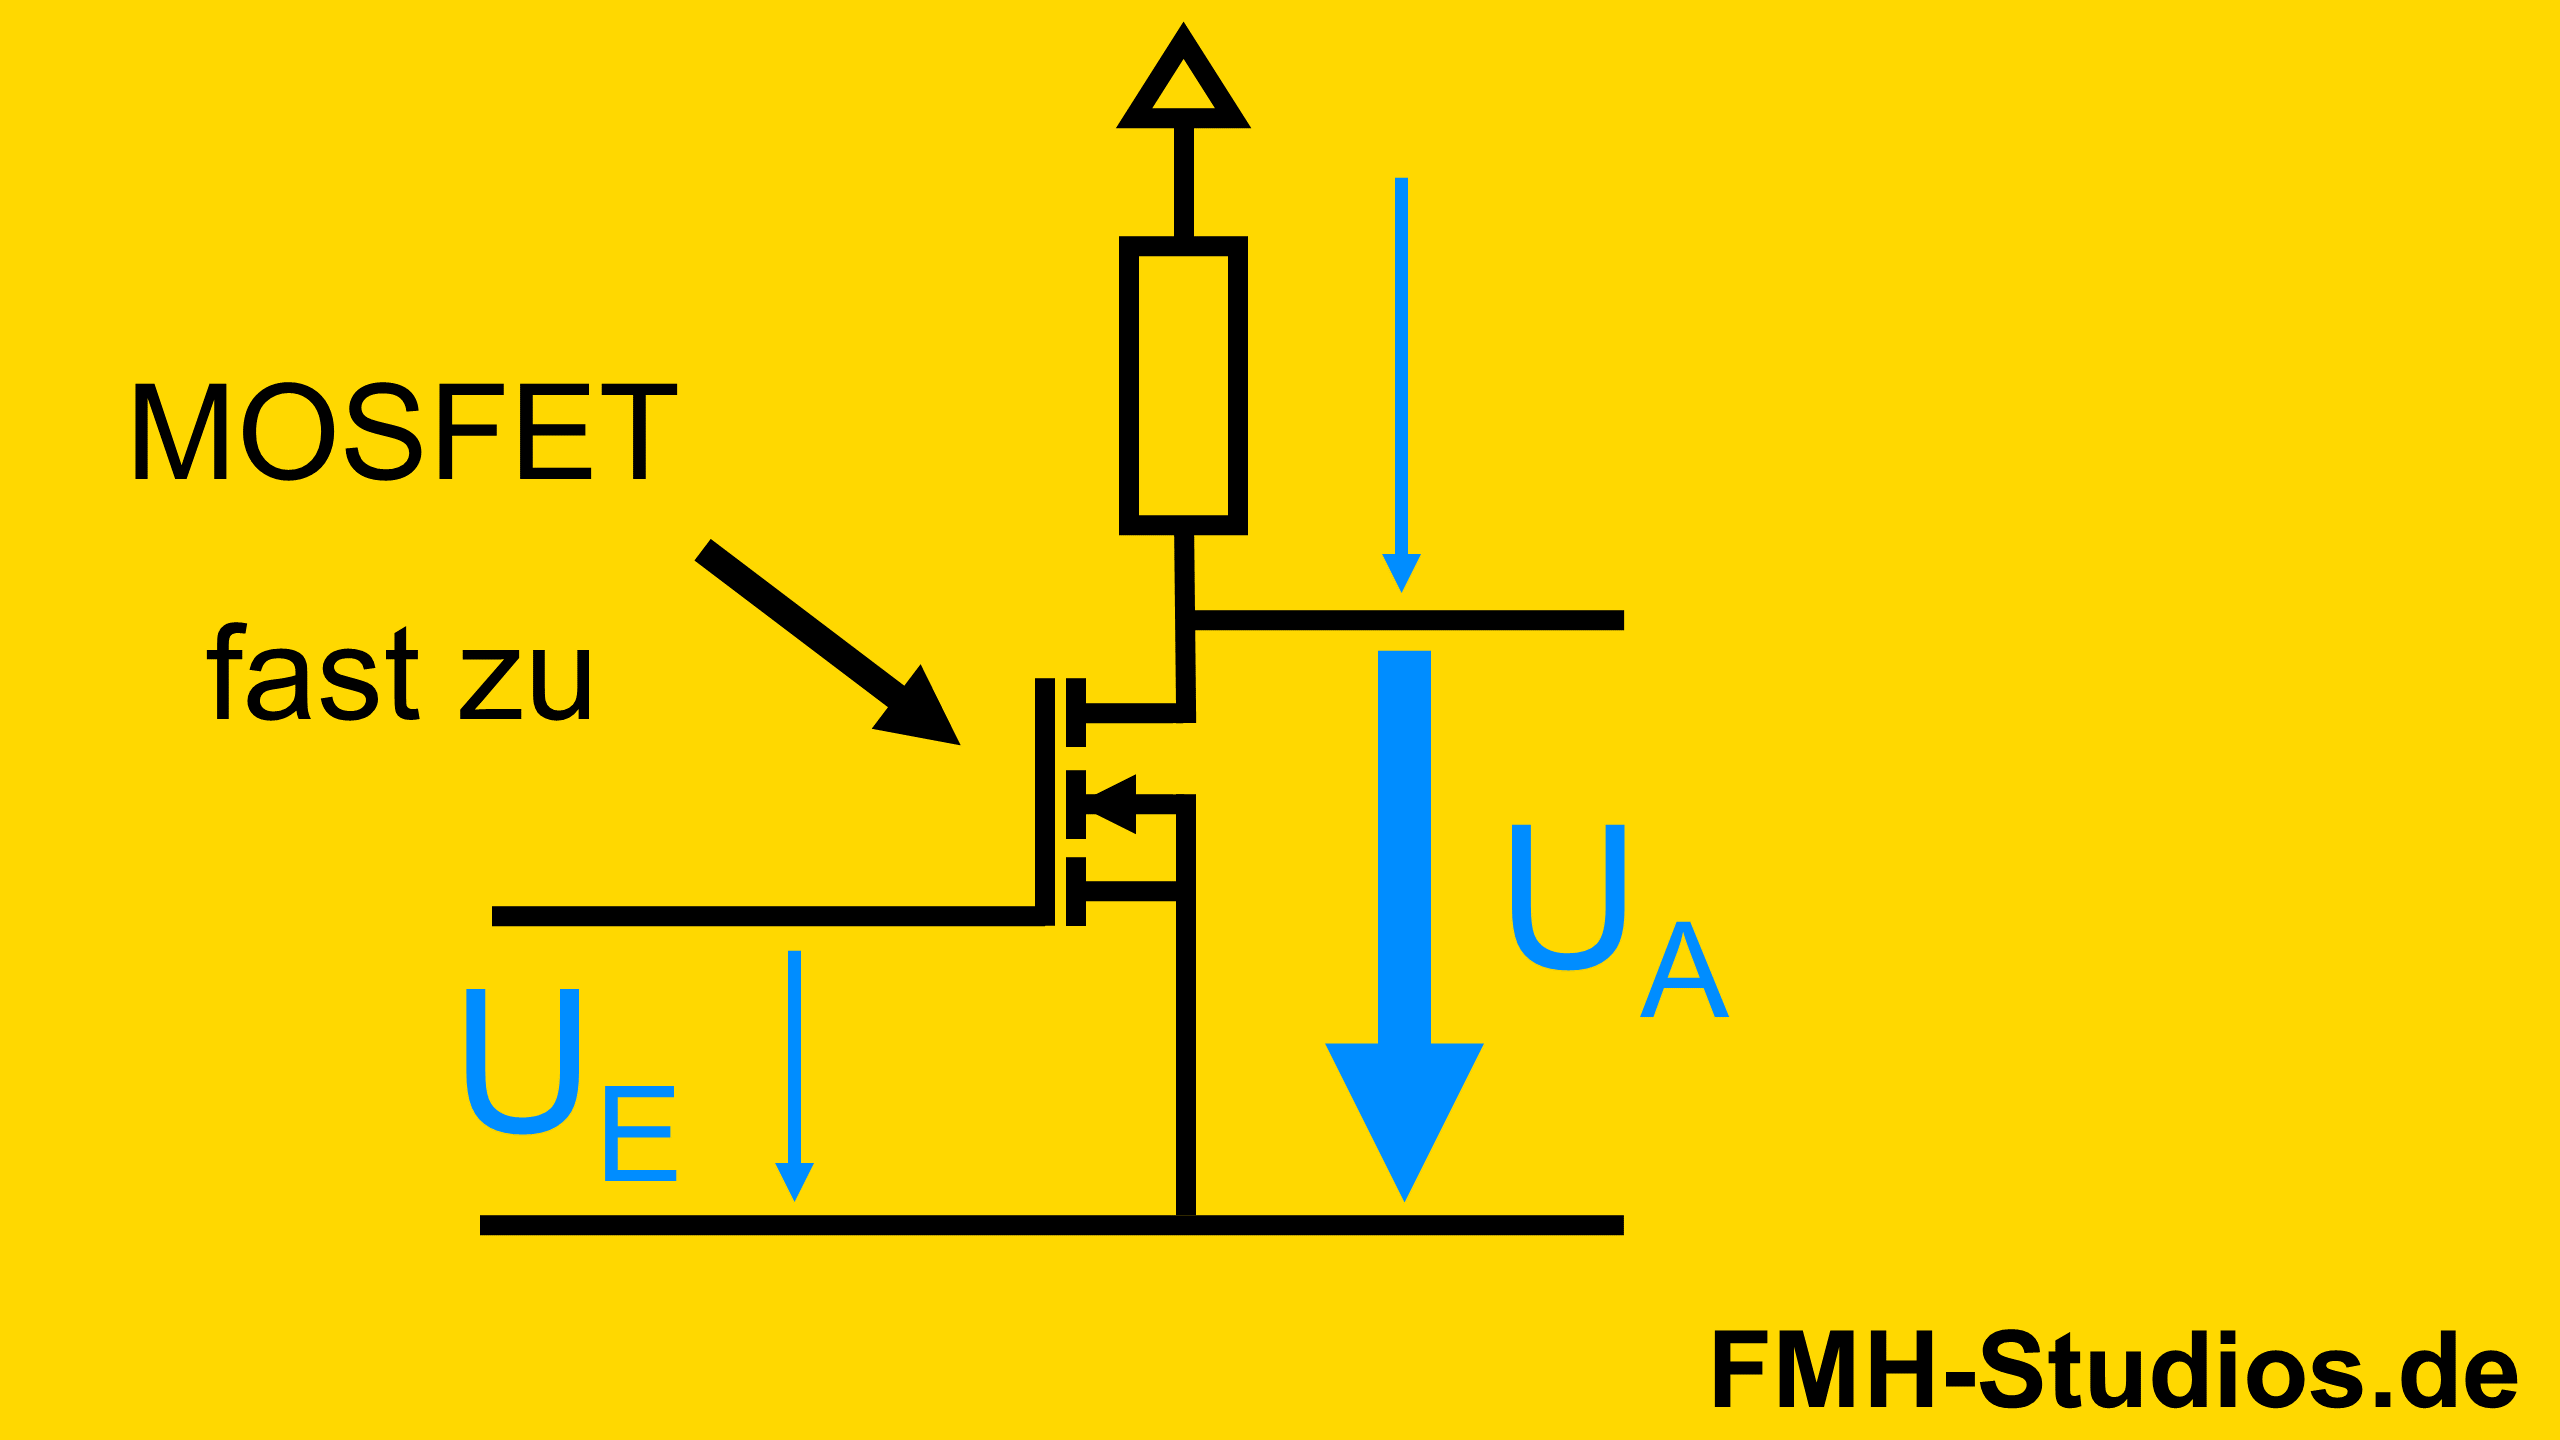 Das Bild zeigt die Funktion der Sourceschaltung. Dabei führt eine kleine Eingangsspannung zu einer großen Ausgangsspannung